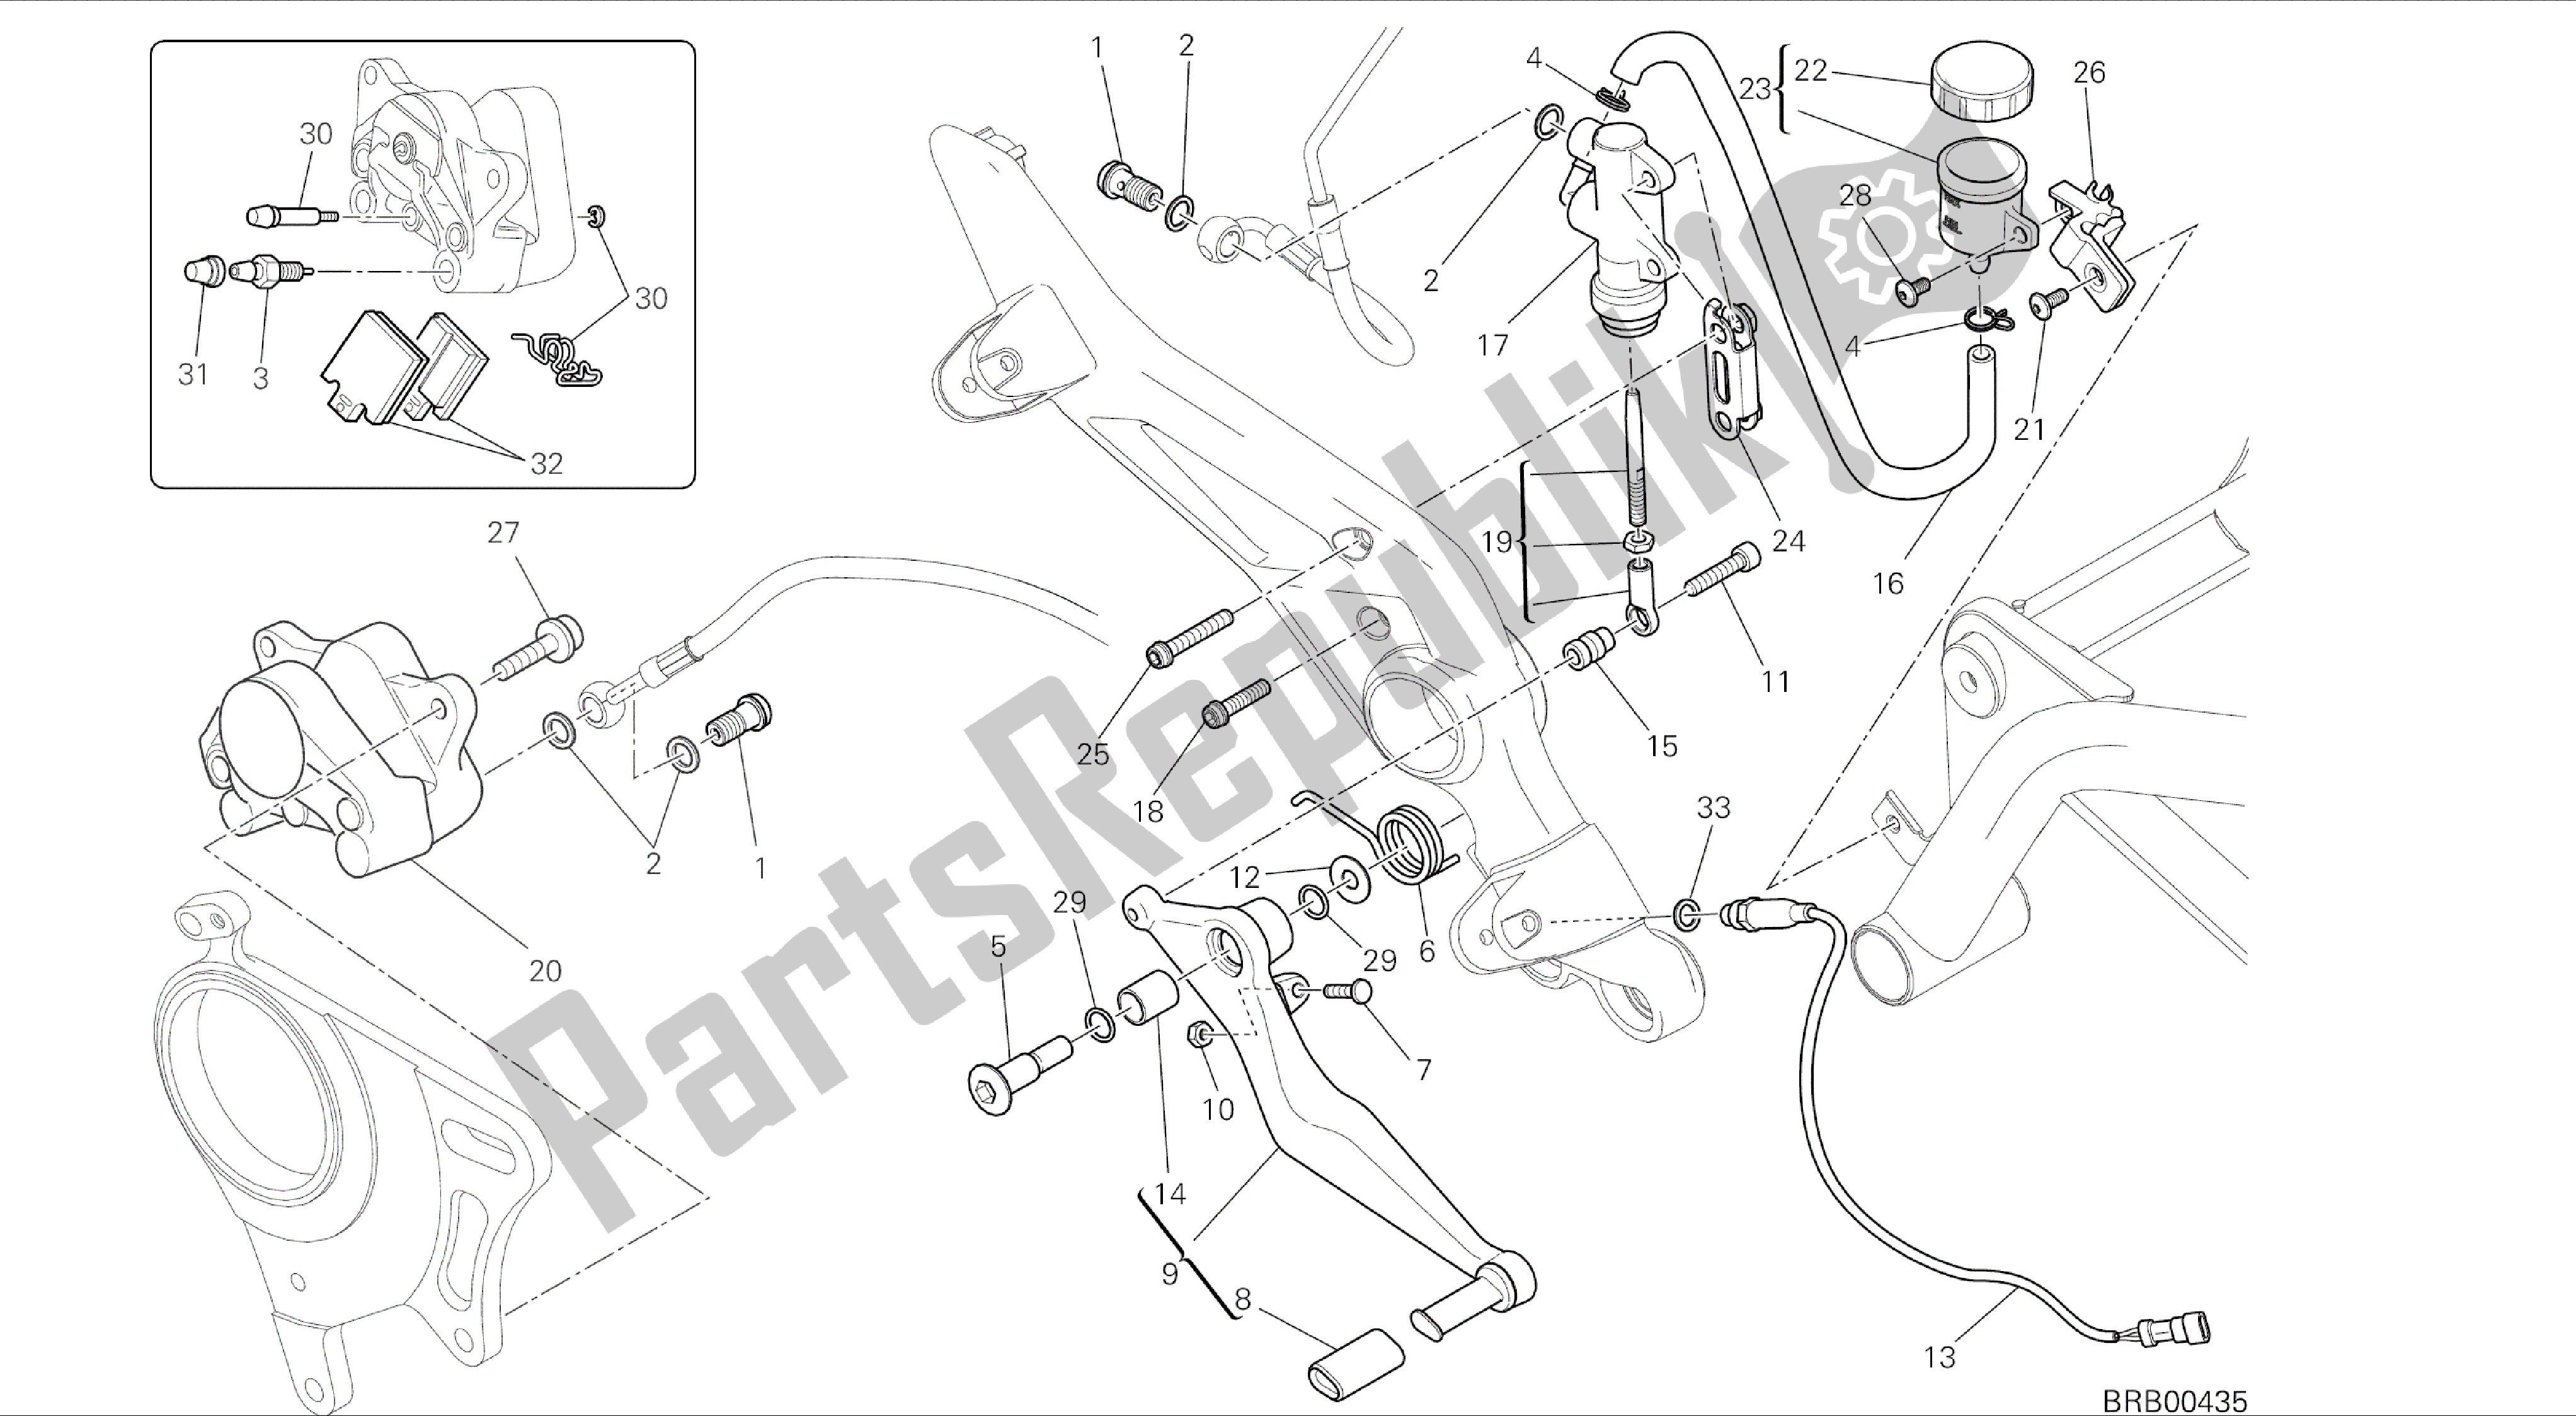 Toutes les pièces pour le Dessin 025 - Système De Freinage Arrière [mod: Hym; Xst: Aus, Chn, Eur, Fra, Jap, Tha, Twn] Cadre De Groupe du Ducati Hypermotard 821 2014